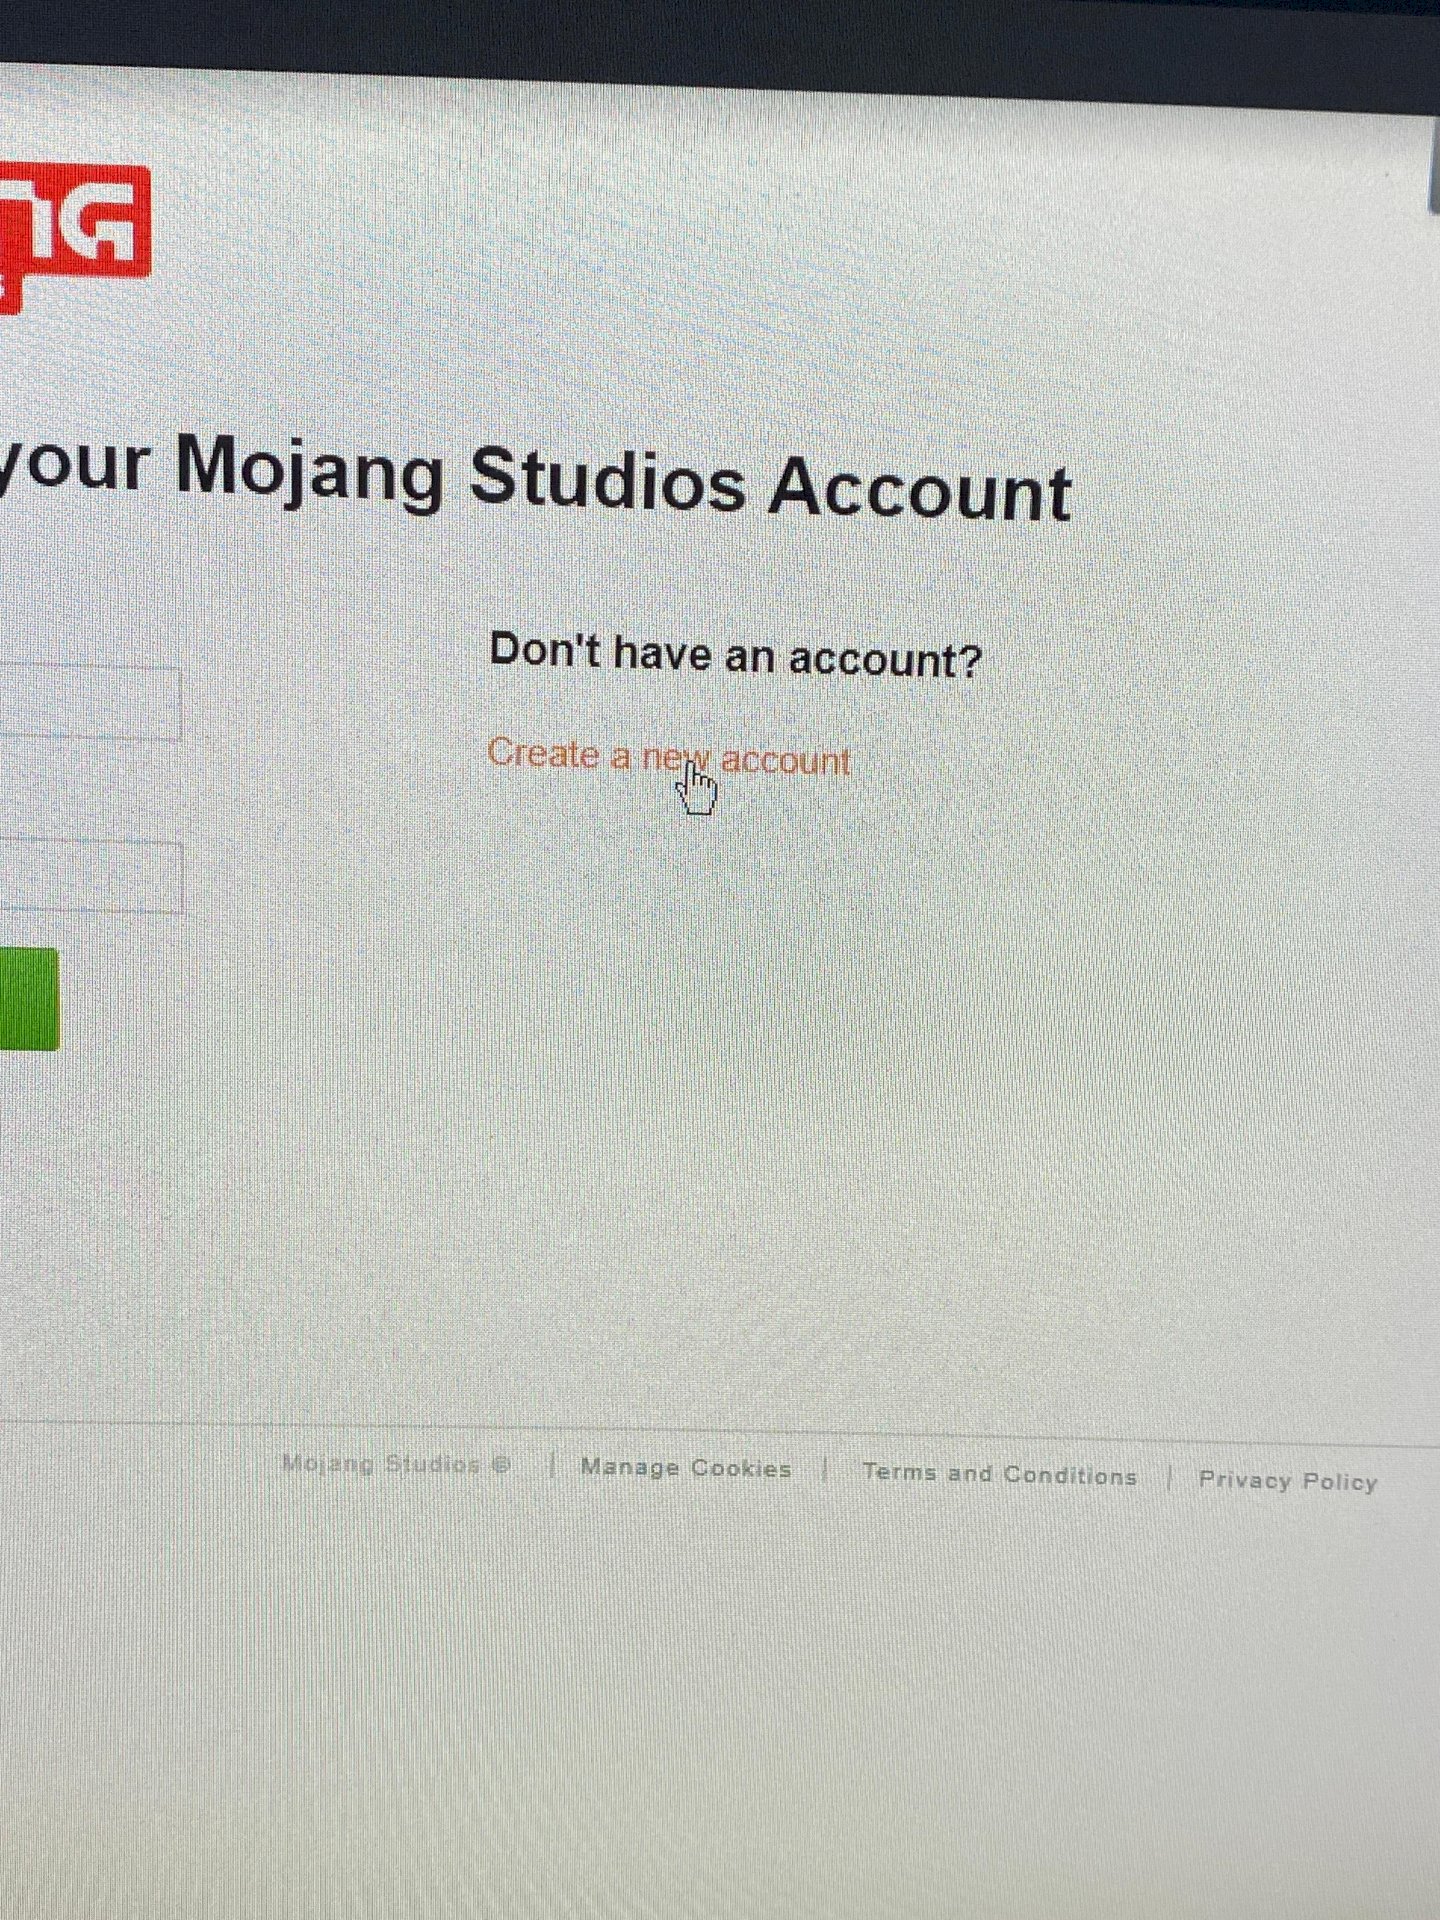 Add a Mojang account